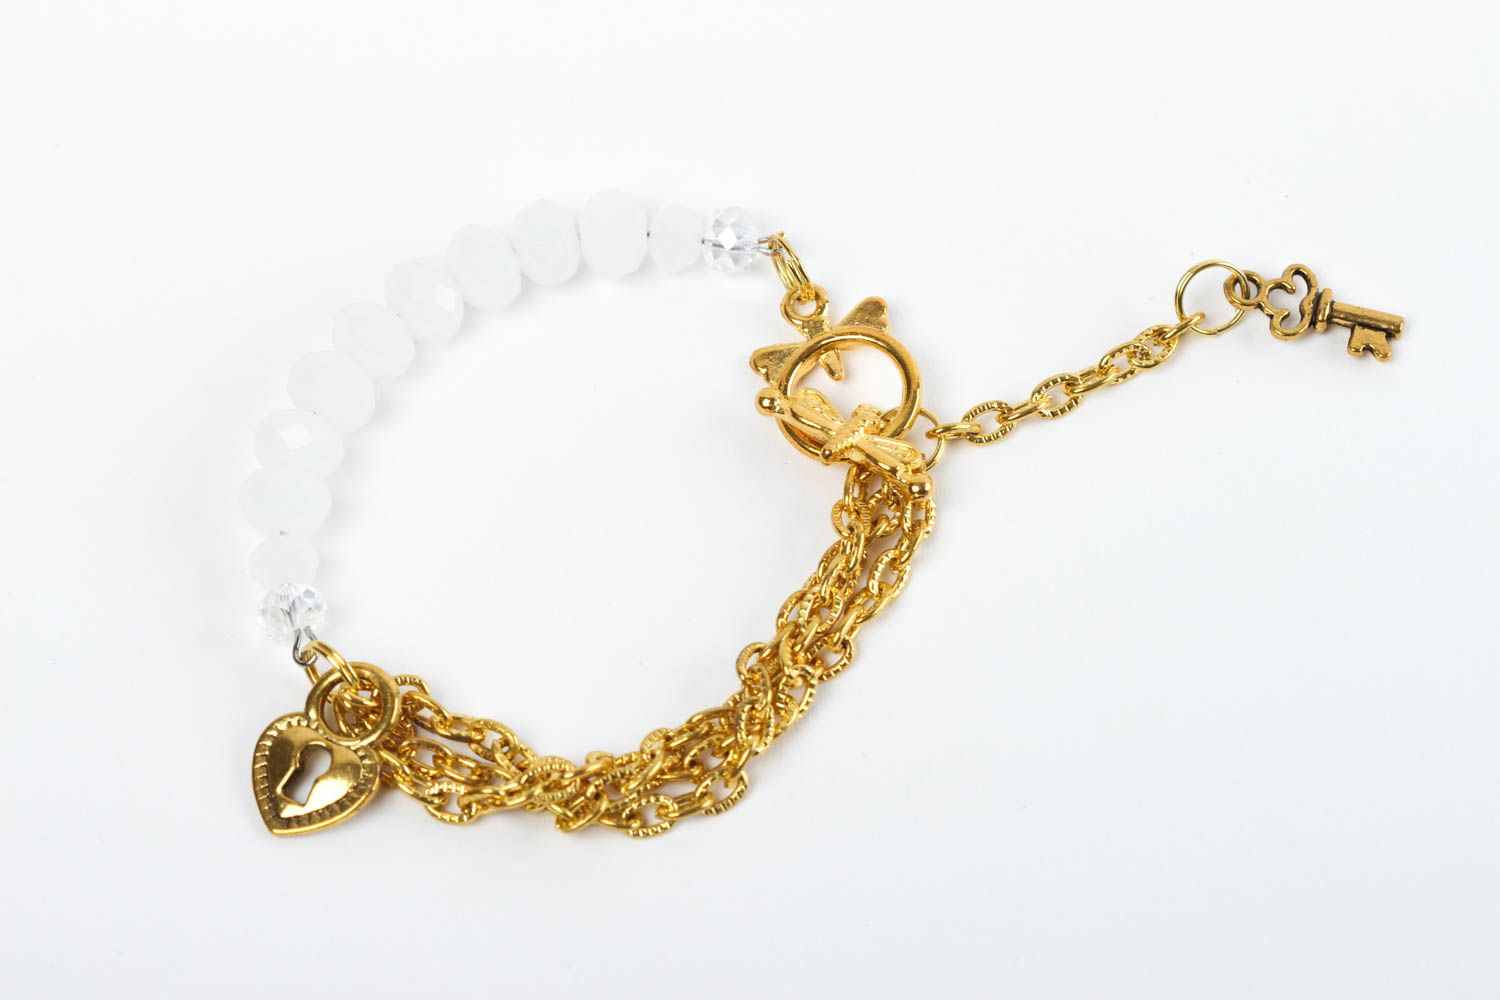 Handmade bracelet designer jewelry unusual gift stone bracelet for women photo 1